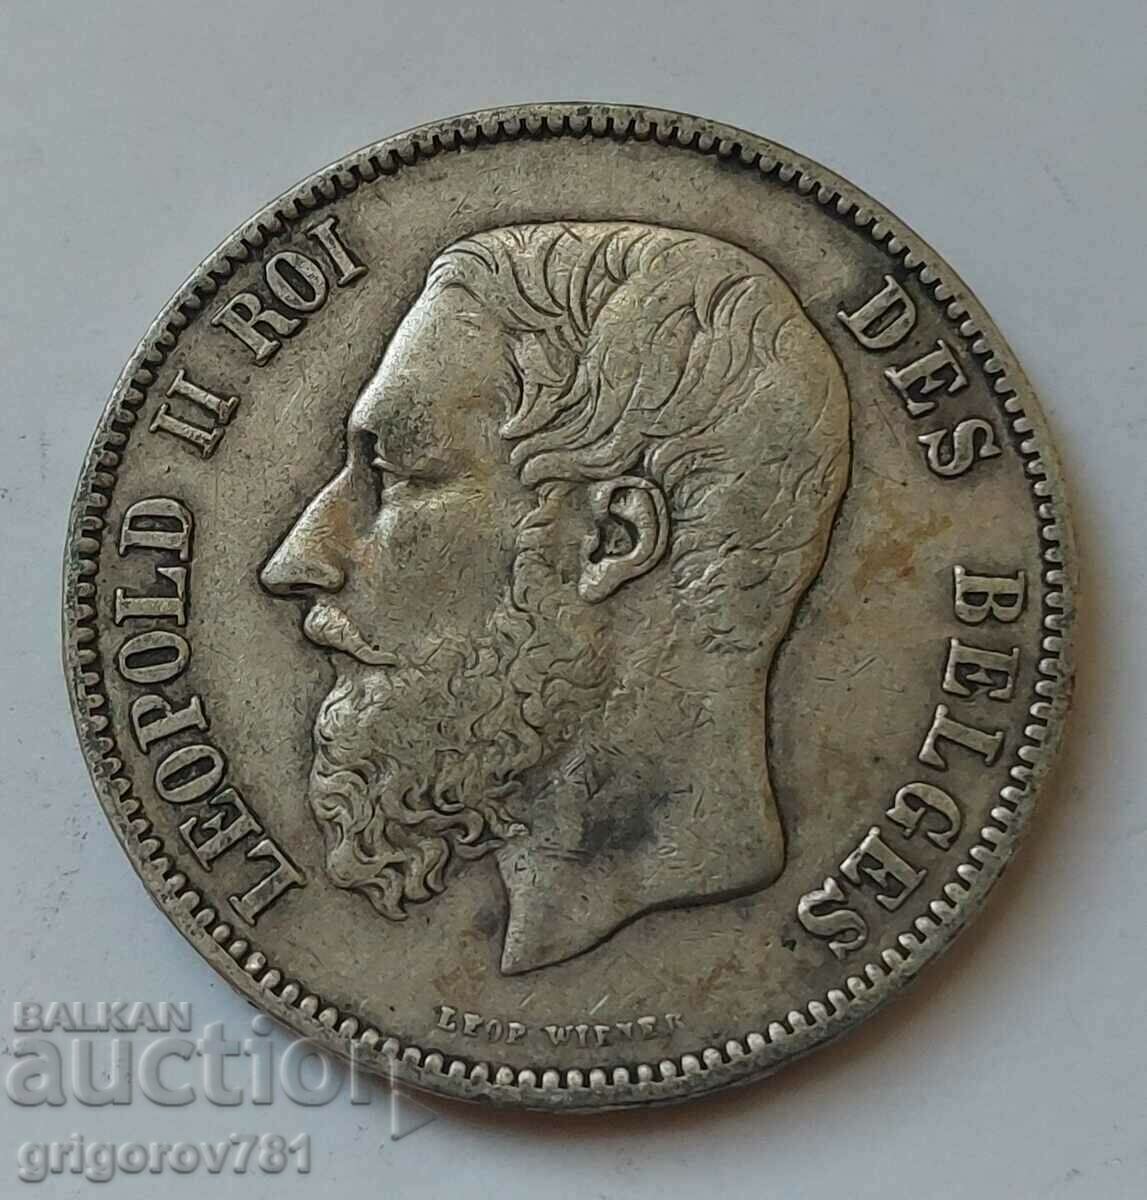 Ασημένιο 5 Φράγκα Βέλγιο 1873 - Ασημένιο νόμισμα #227